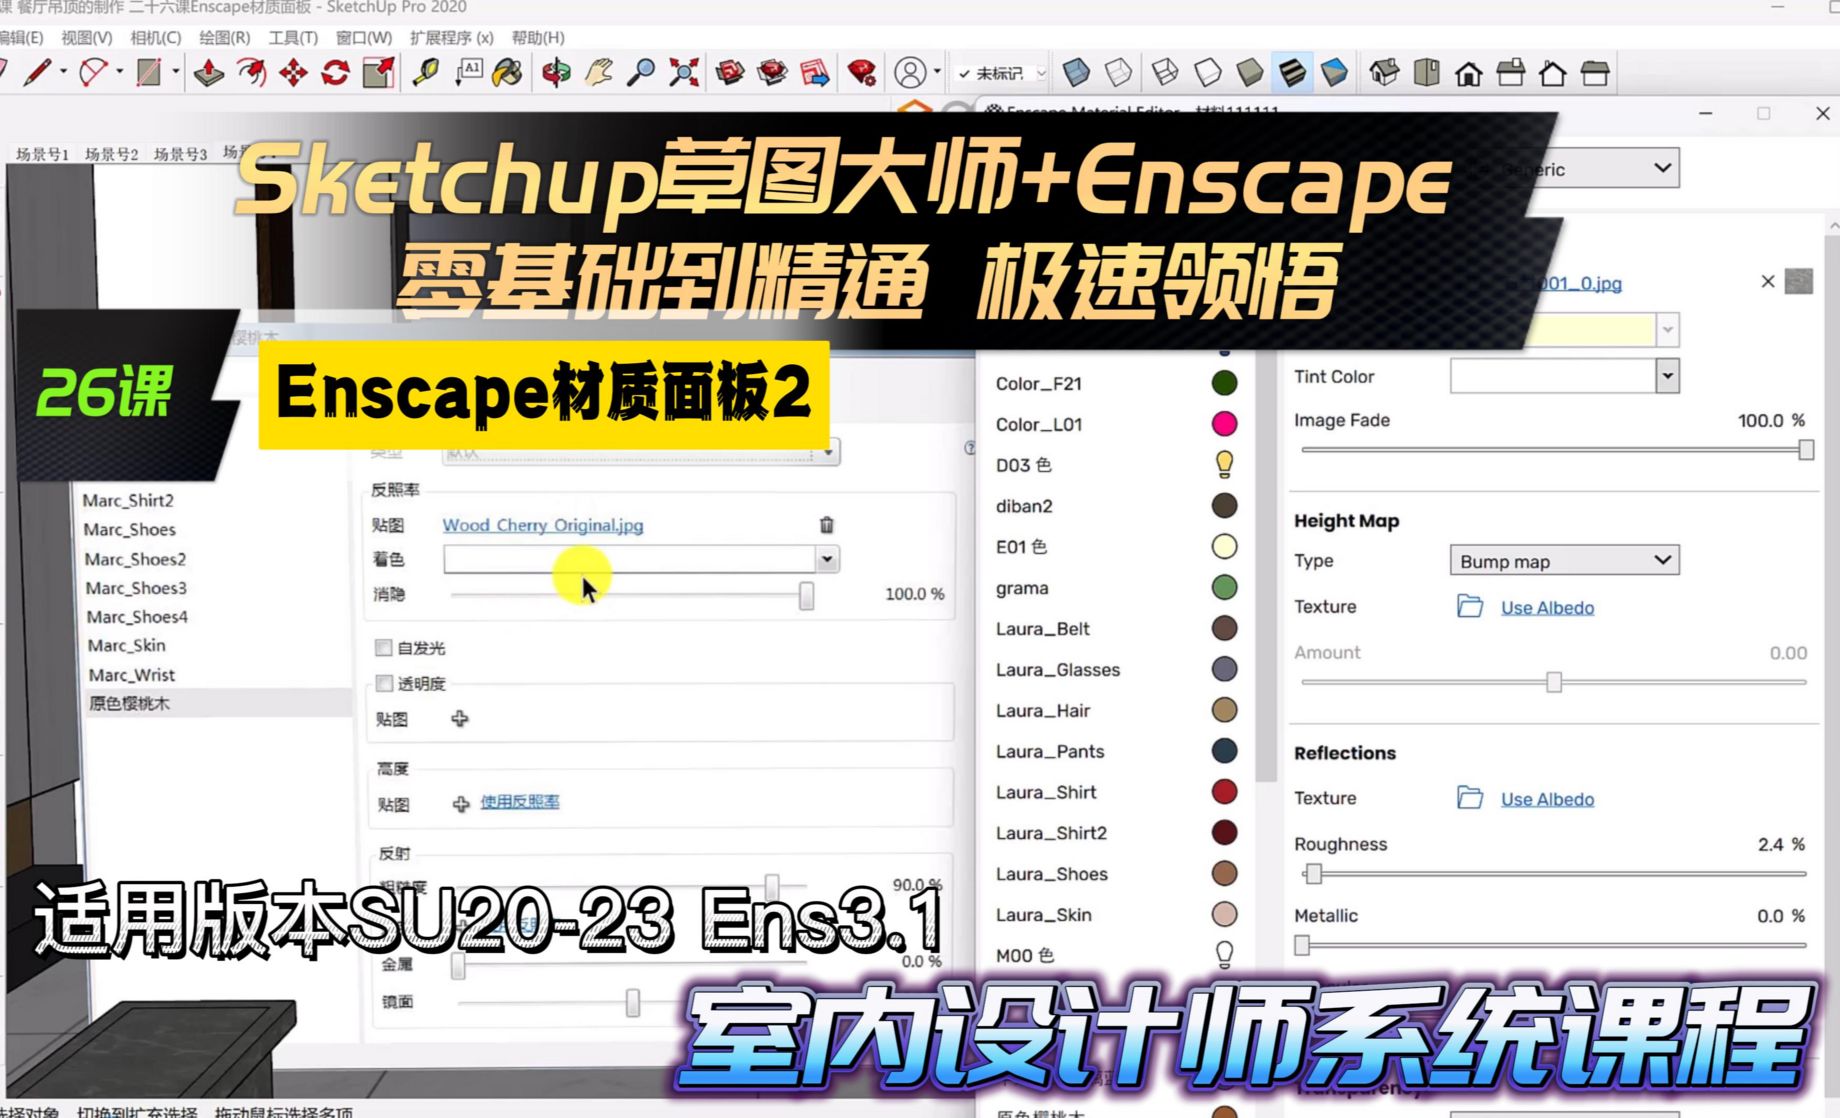 Sketchup草图大师+Enscape 室内设计极速领悟教程26课 Enscape材质面板2